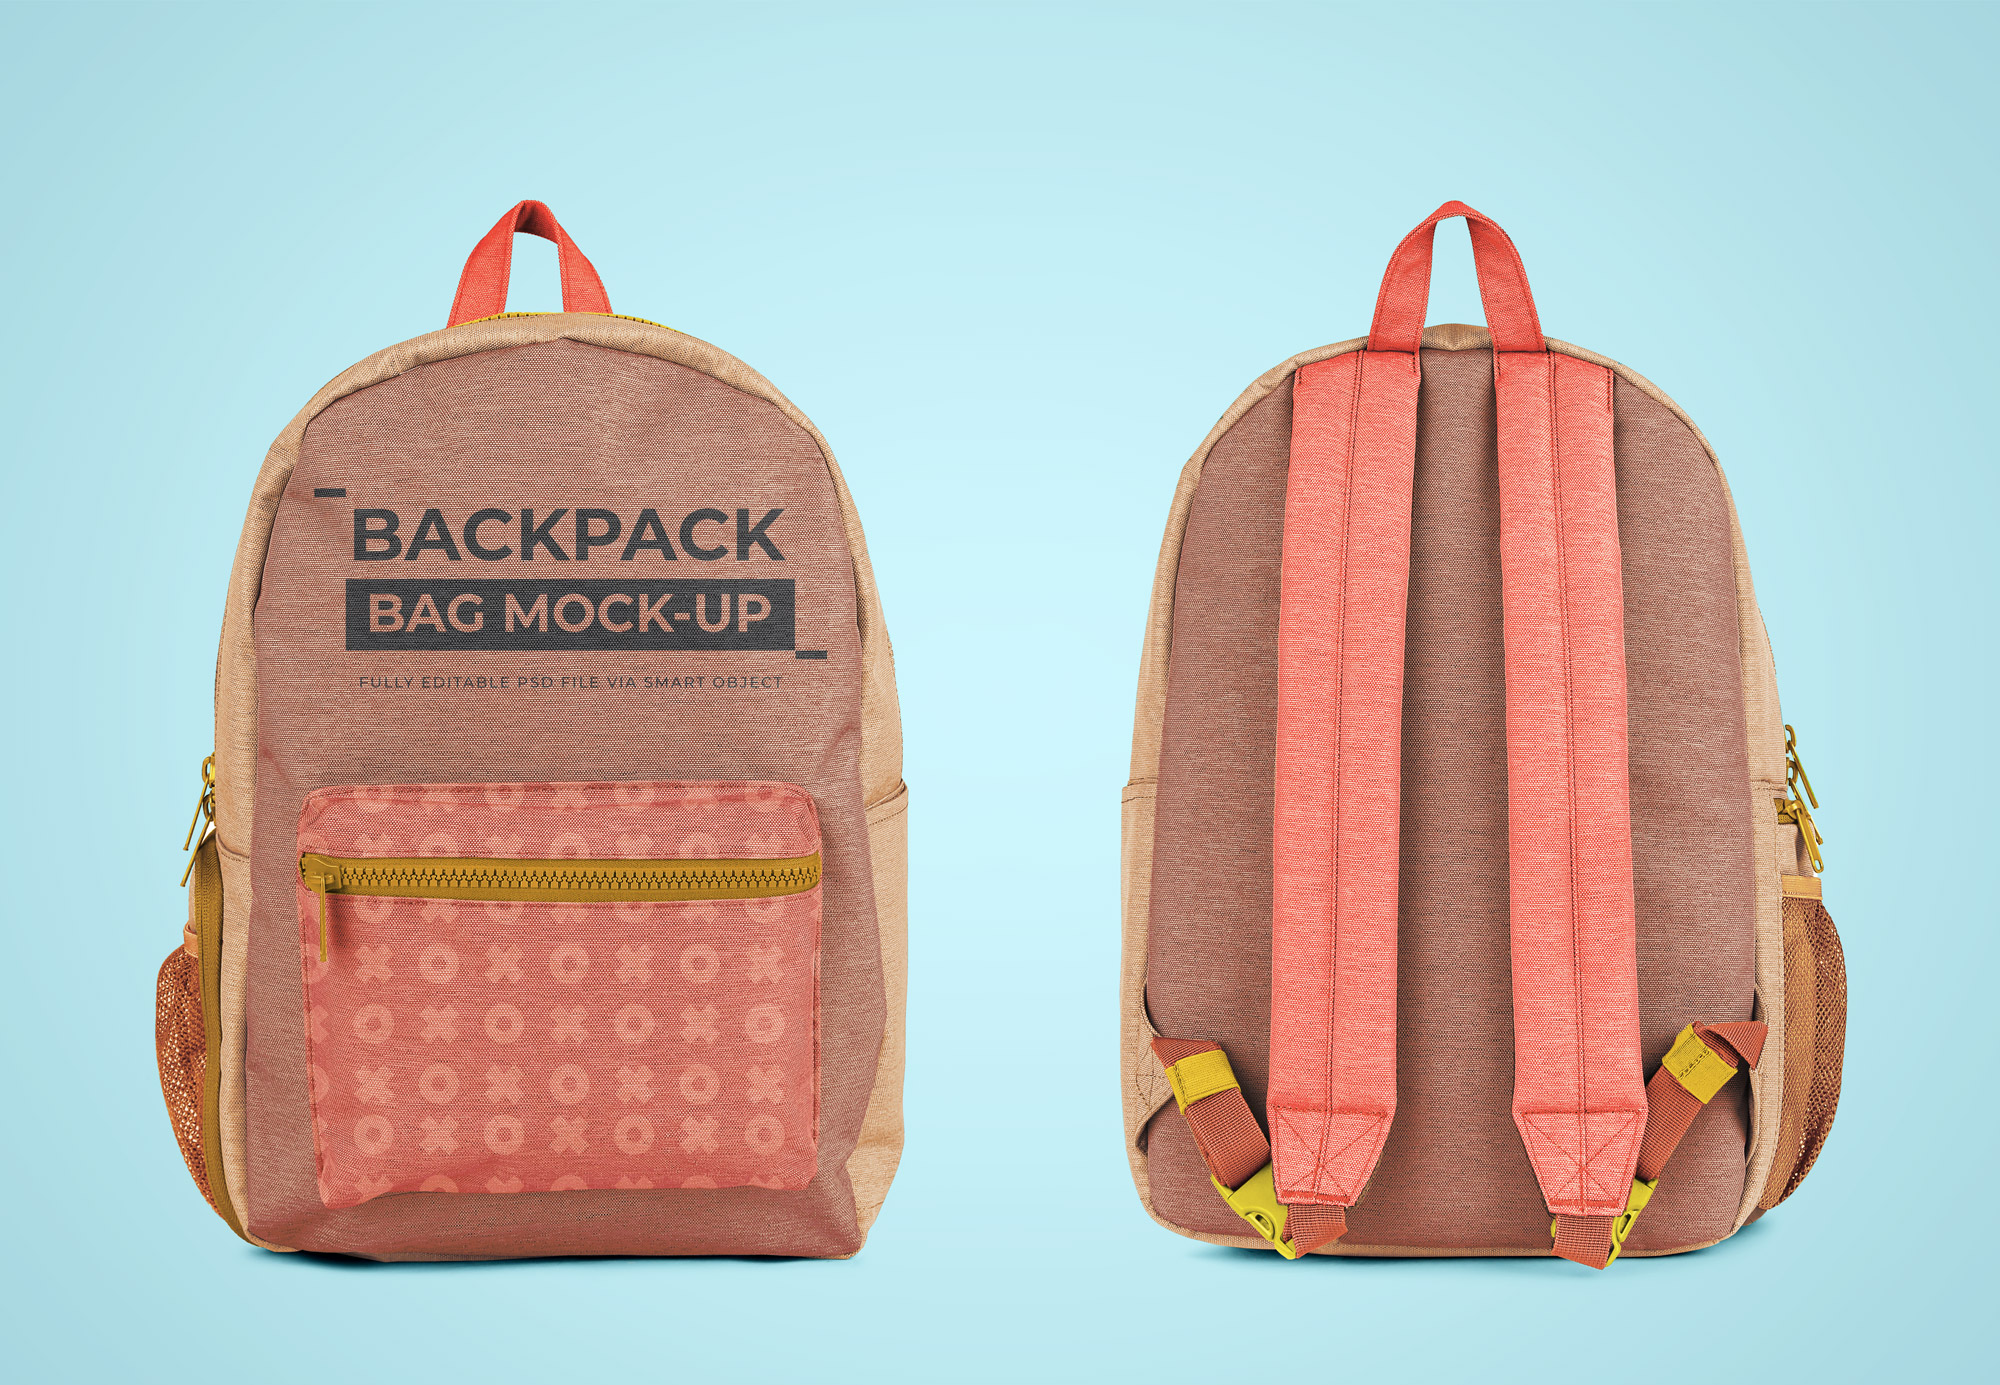 Free Backpack Mockup